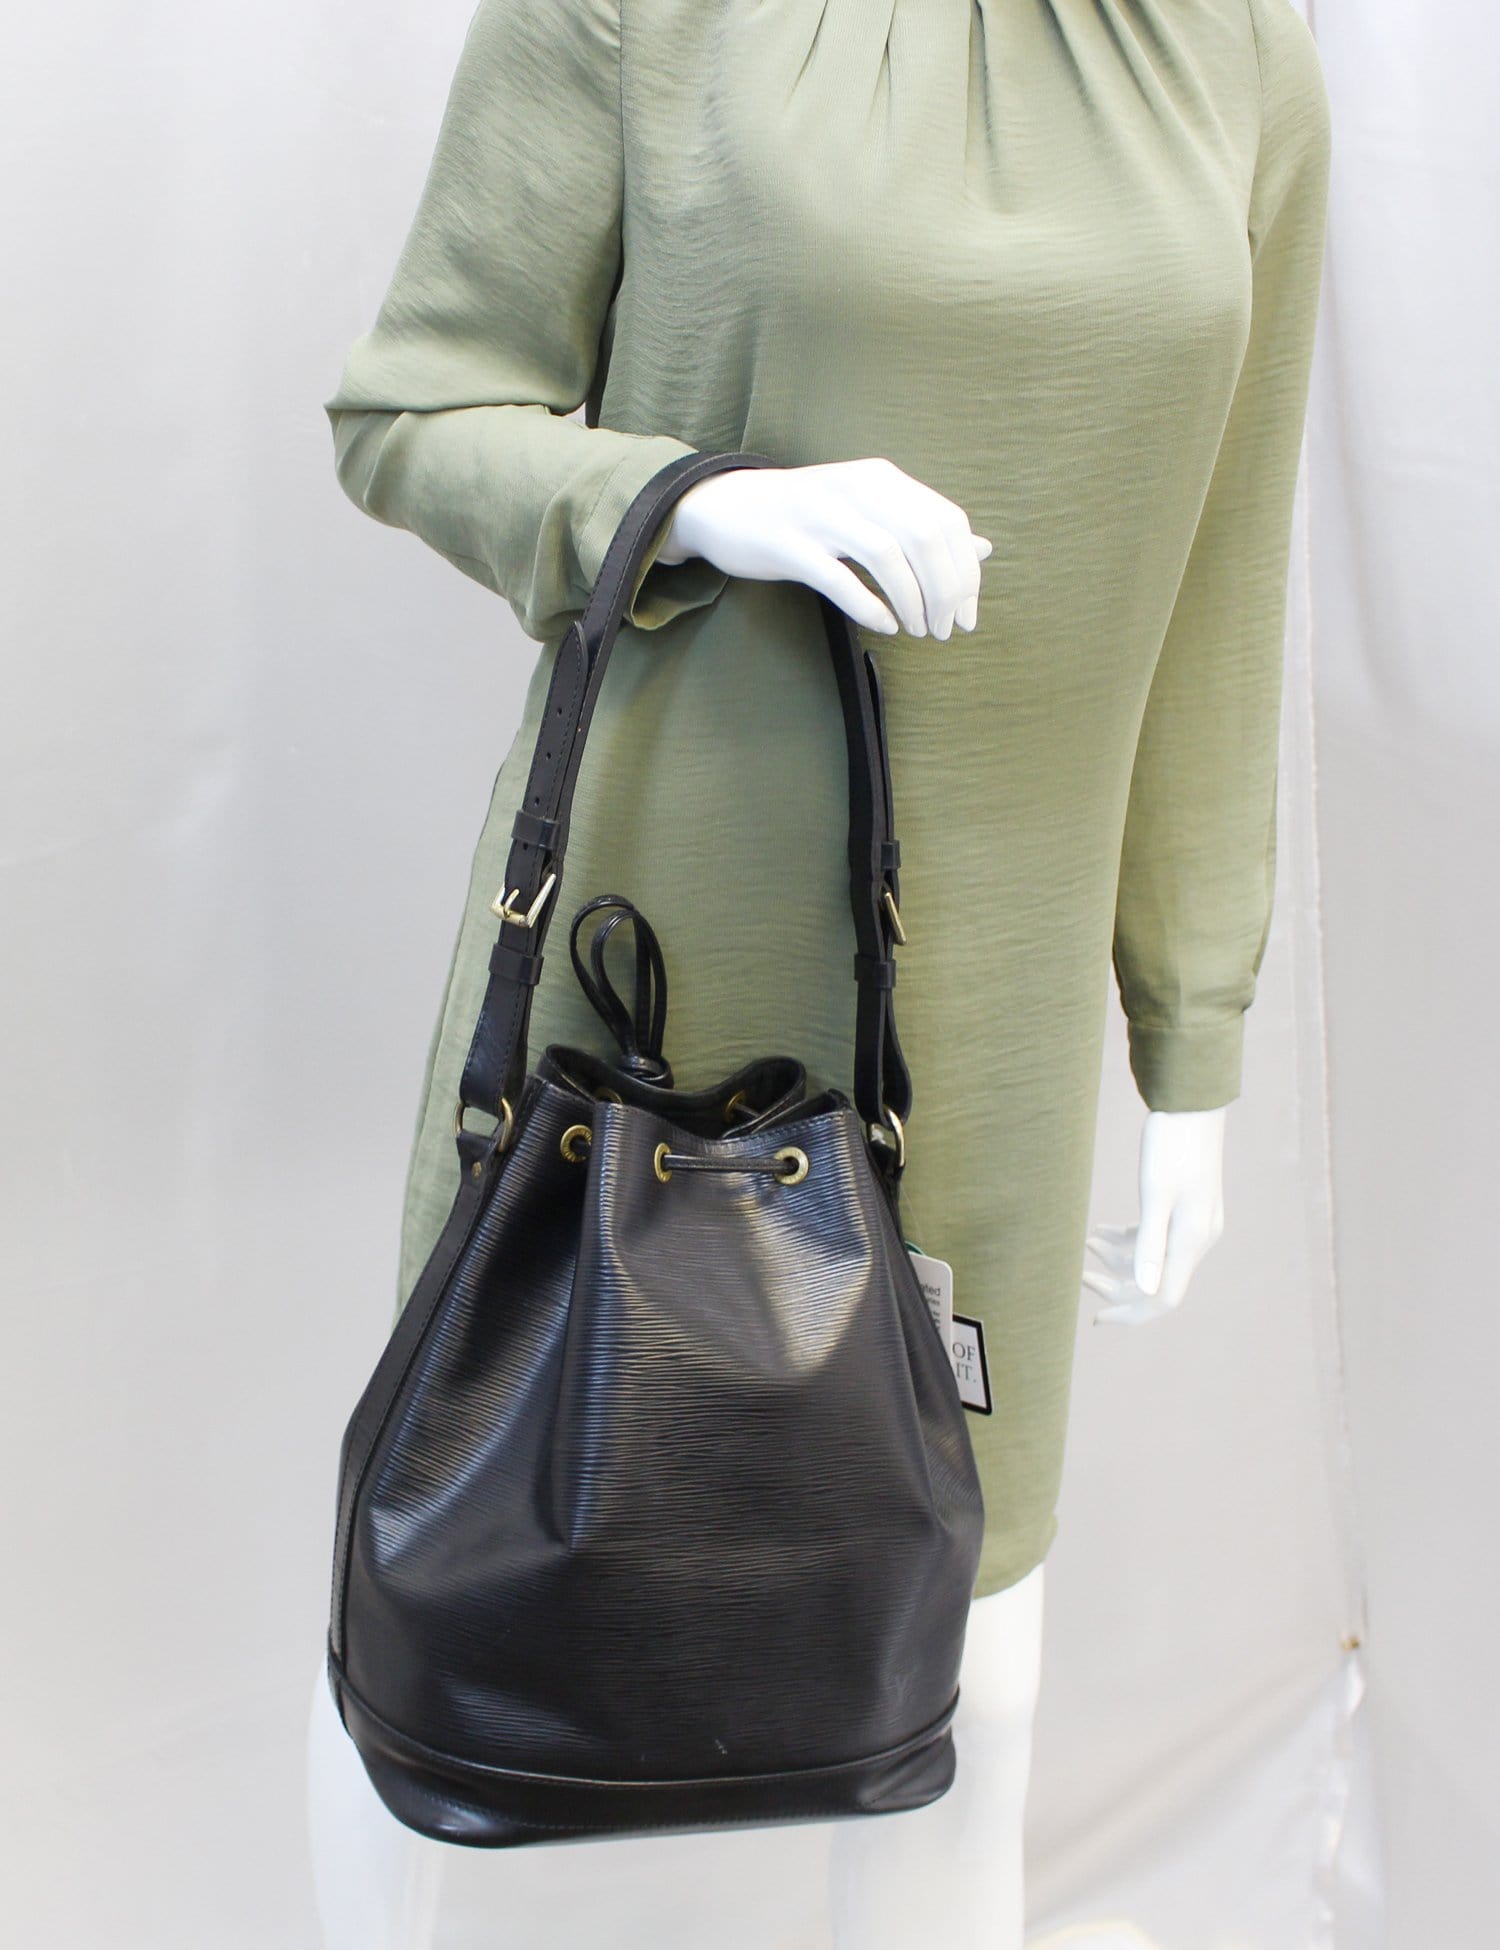 Louis Vuitton Shoulder Bag Noe M44003 Epi Leather Brown Women's LOUIS  VUITTON